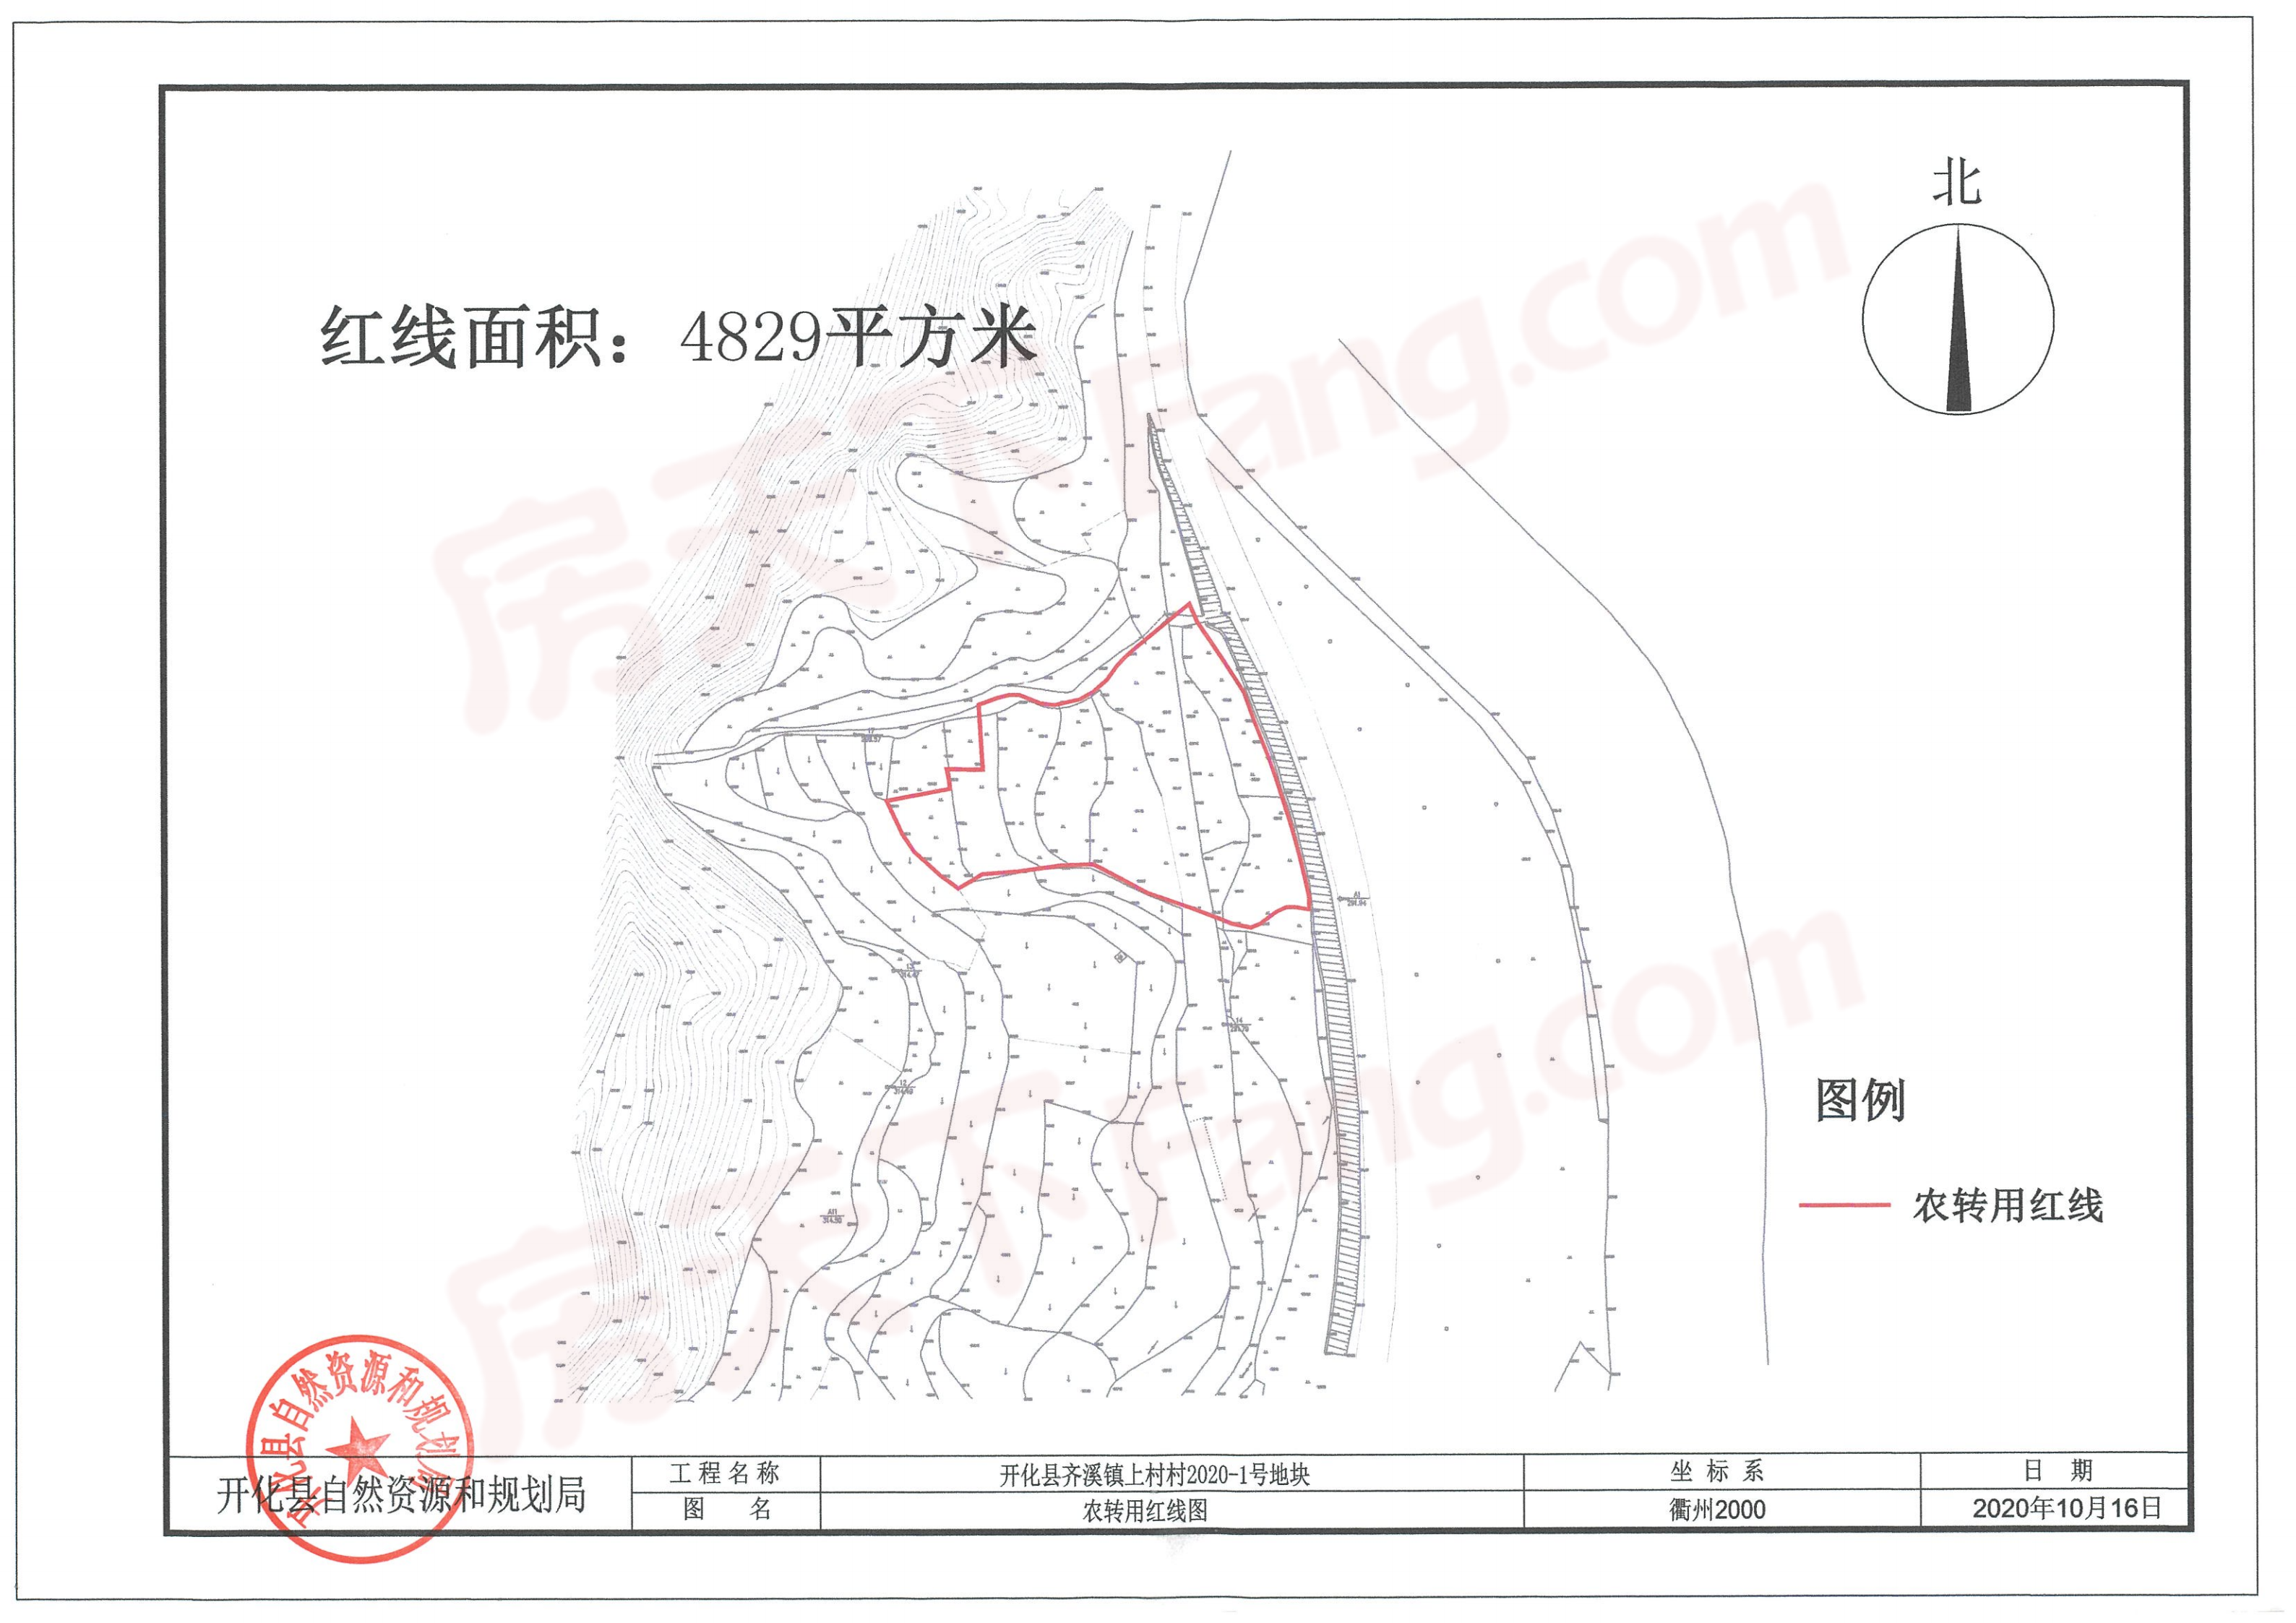 开化县火车站周边规划公示，大棚坞、华埠等多处土地征收启动公告